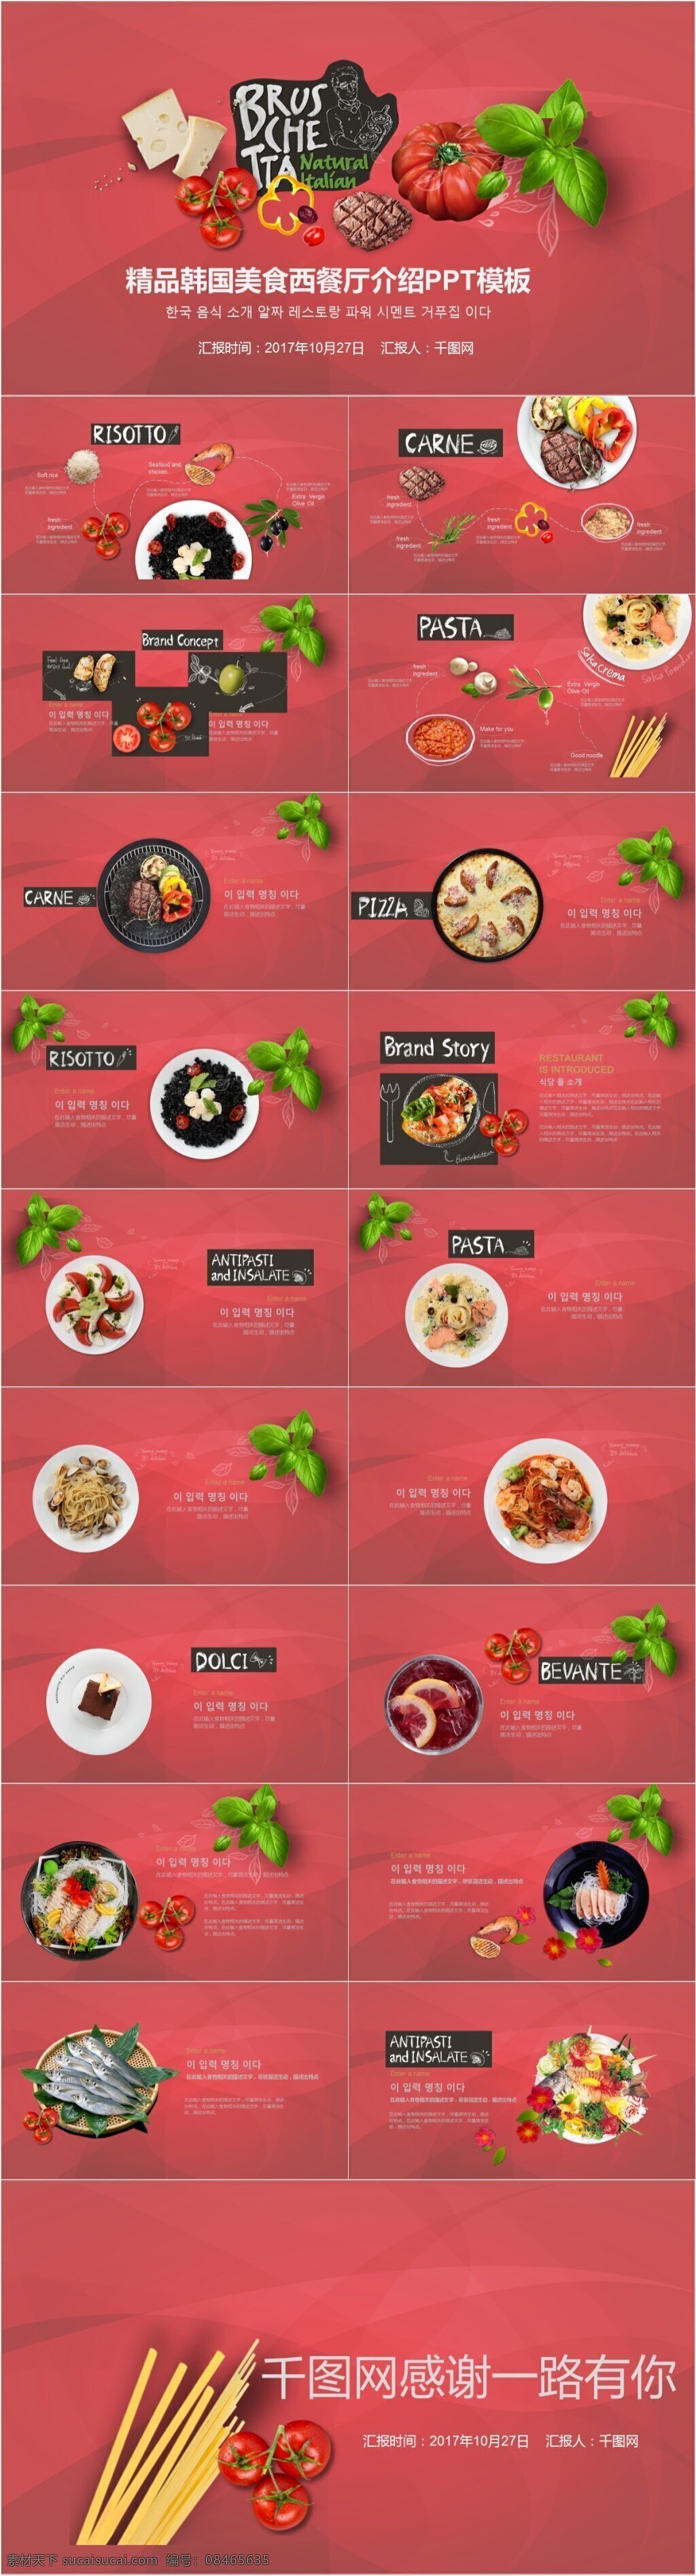 精品 韩国 美食 西餐厅 介绍 模板 餐饮 ppt模板 推荐 实用 通用 高端